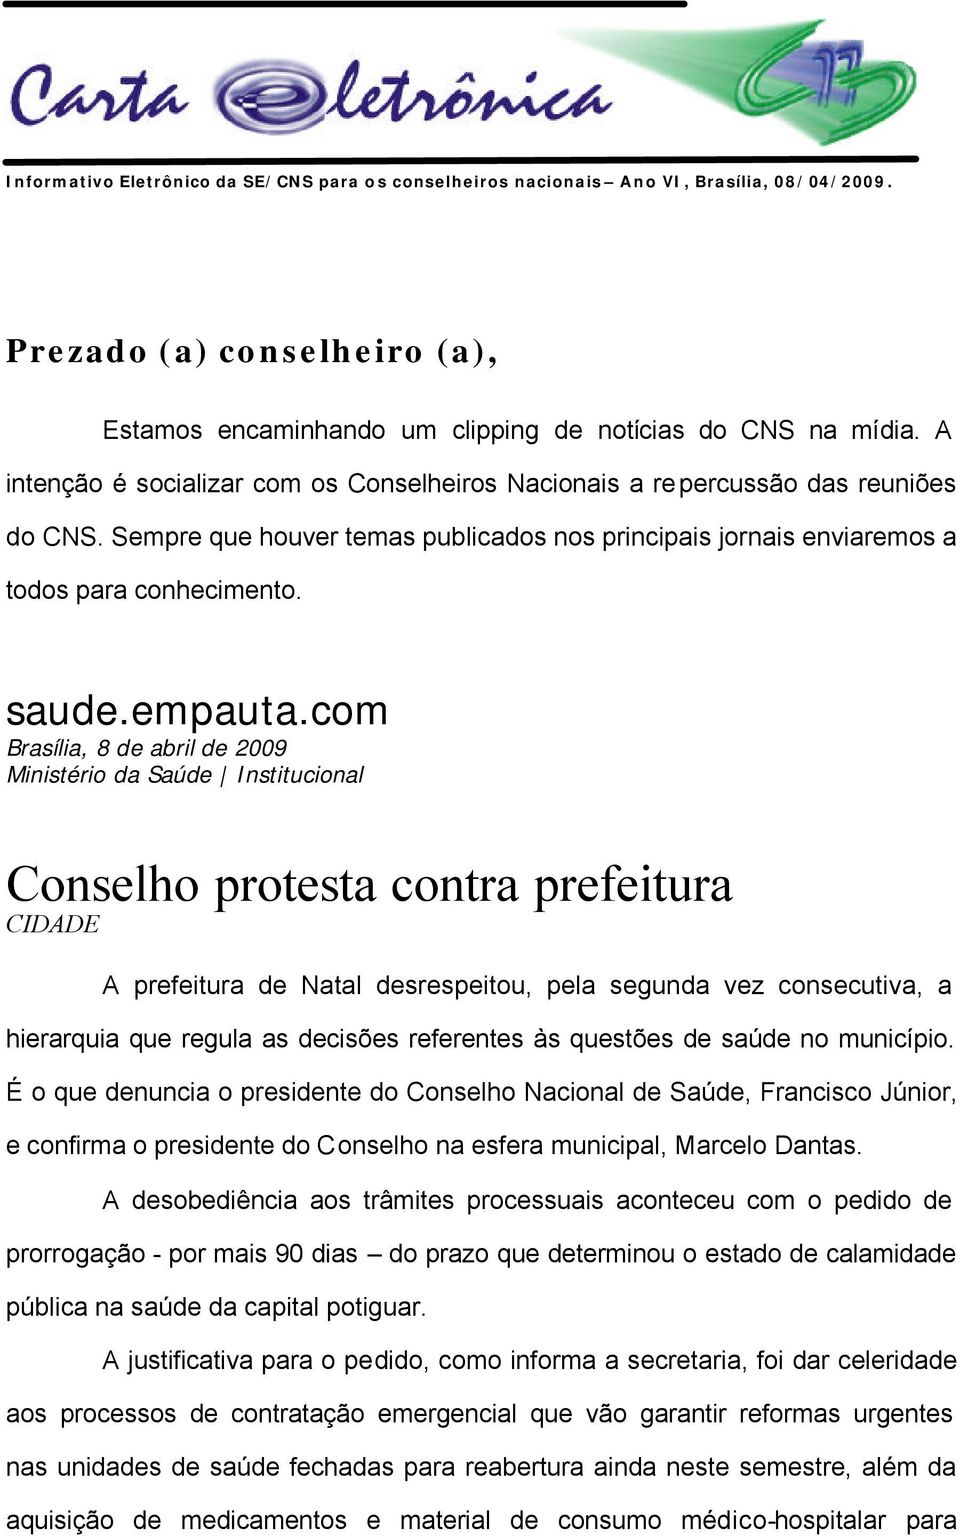 com Brasília, 8 de abril de 2009 Ministério da Saúde Institucional Conselho protesta contra prefeitura CIDADE A prefeitura de Natal desrespeitou, pela segunda vez consecutiva, a hierarquia que regula